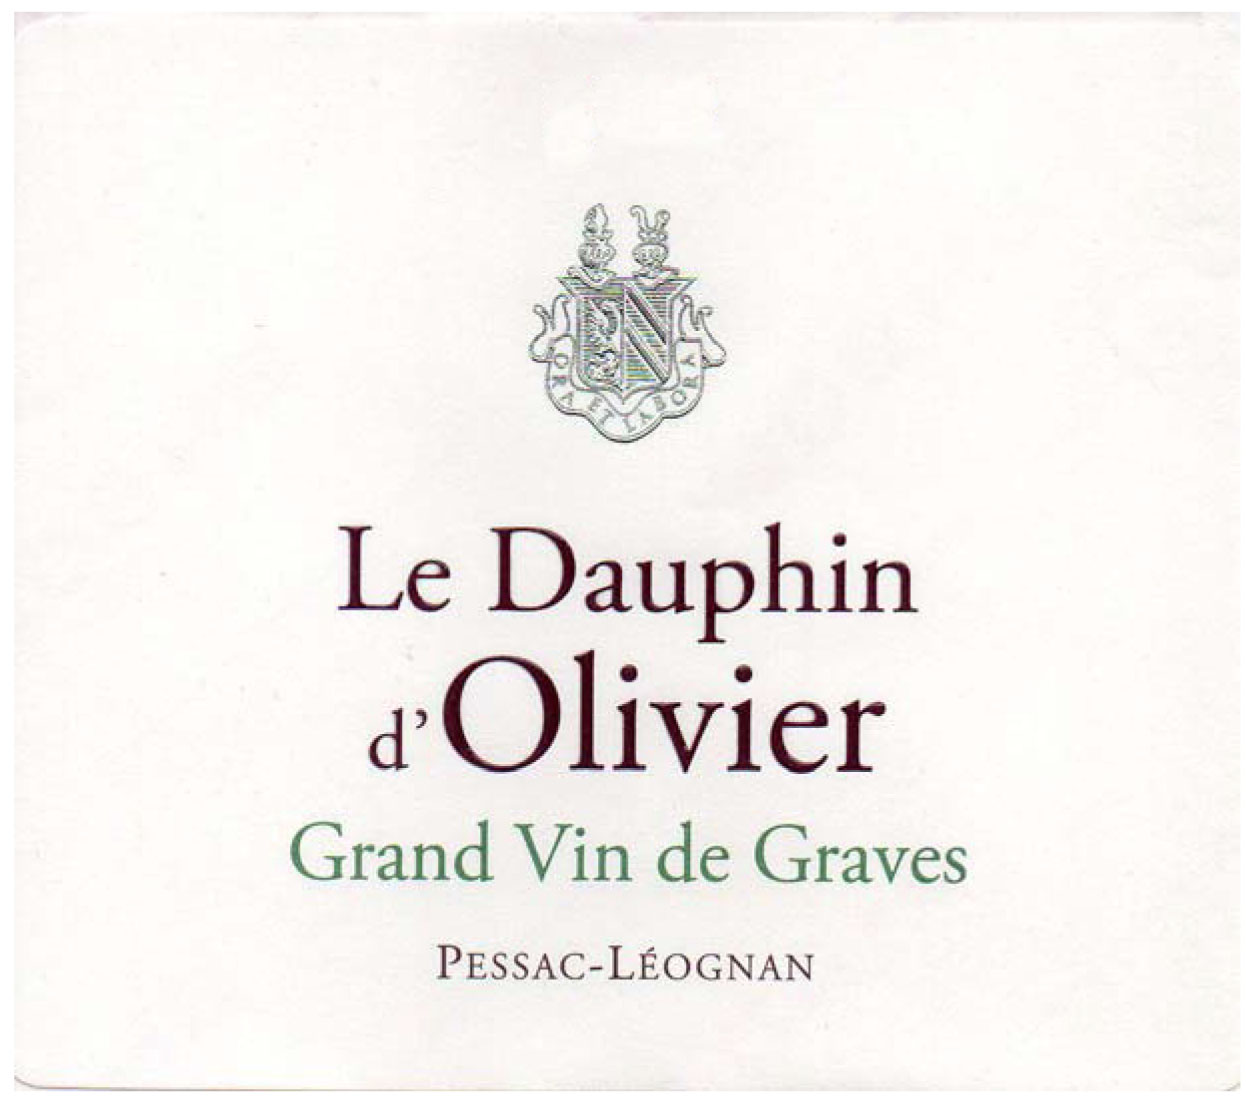 Le Dauphin D'Olivier Blanc label